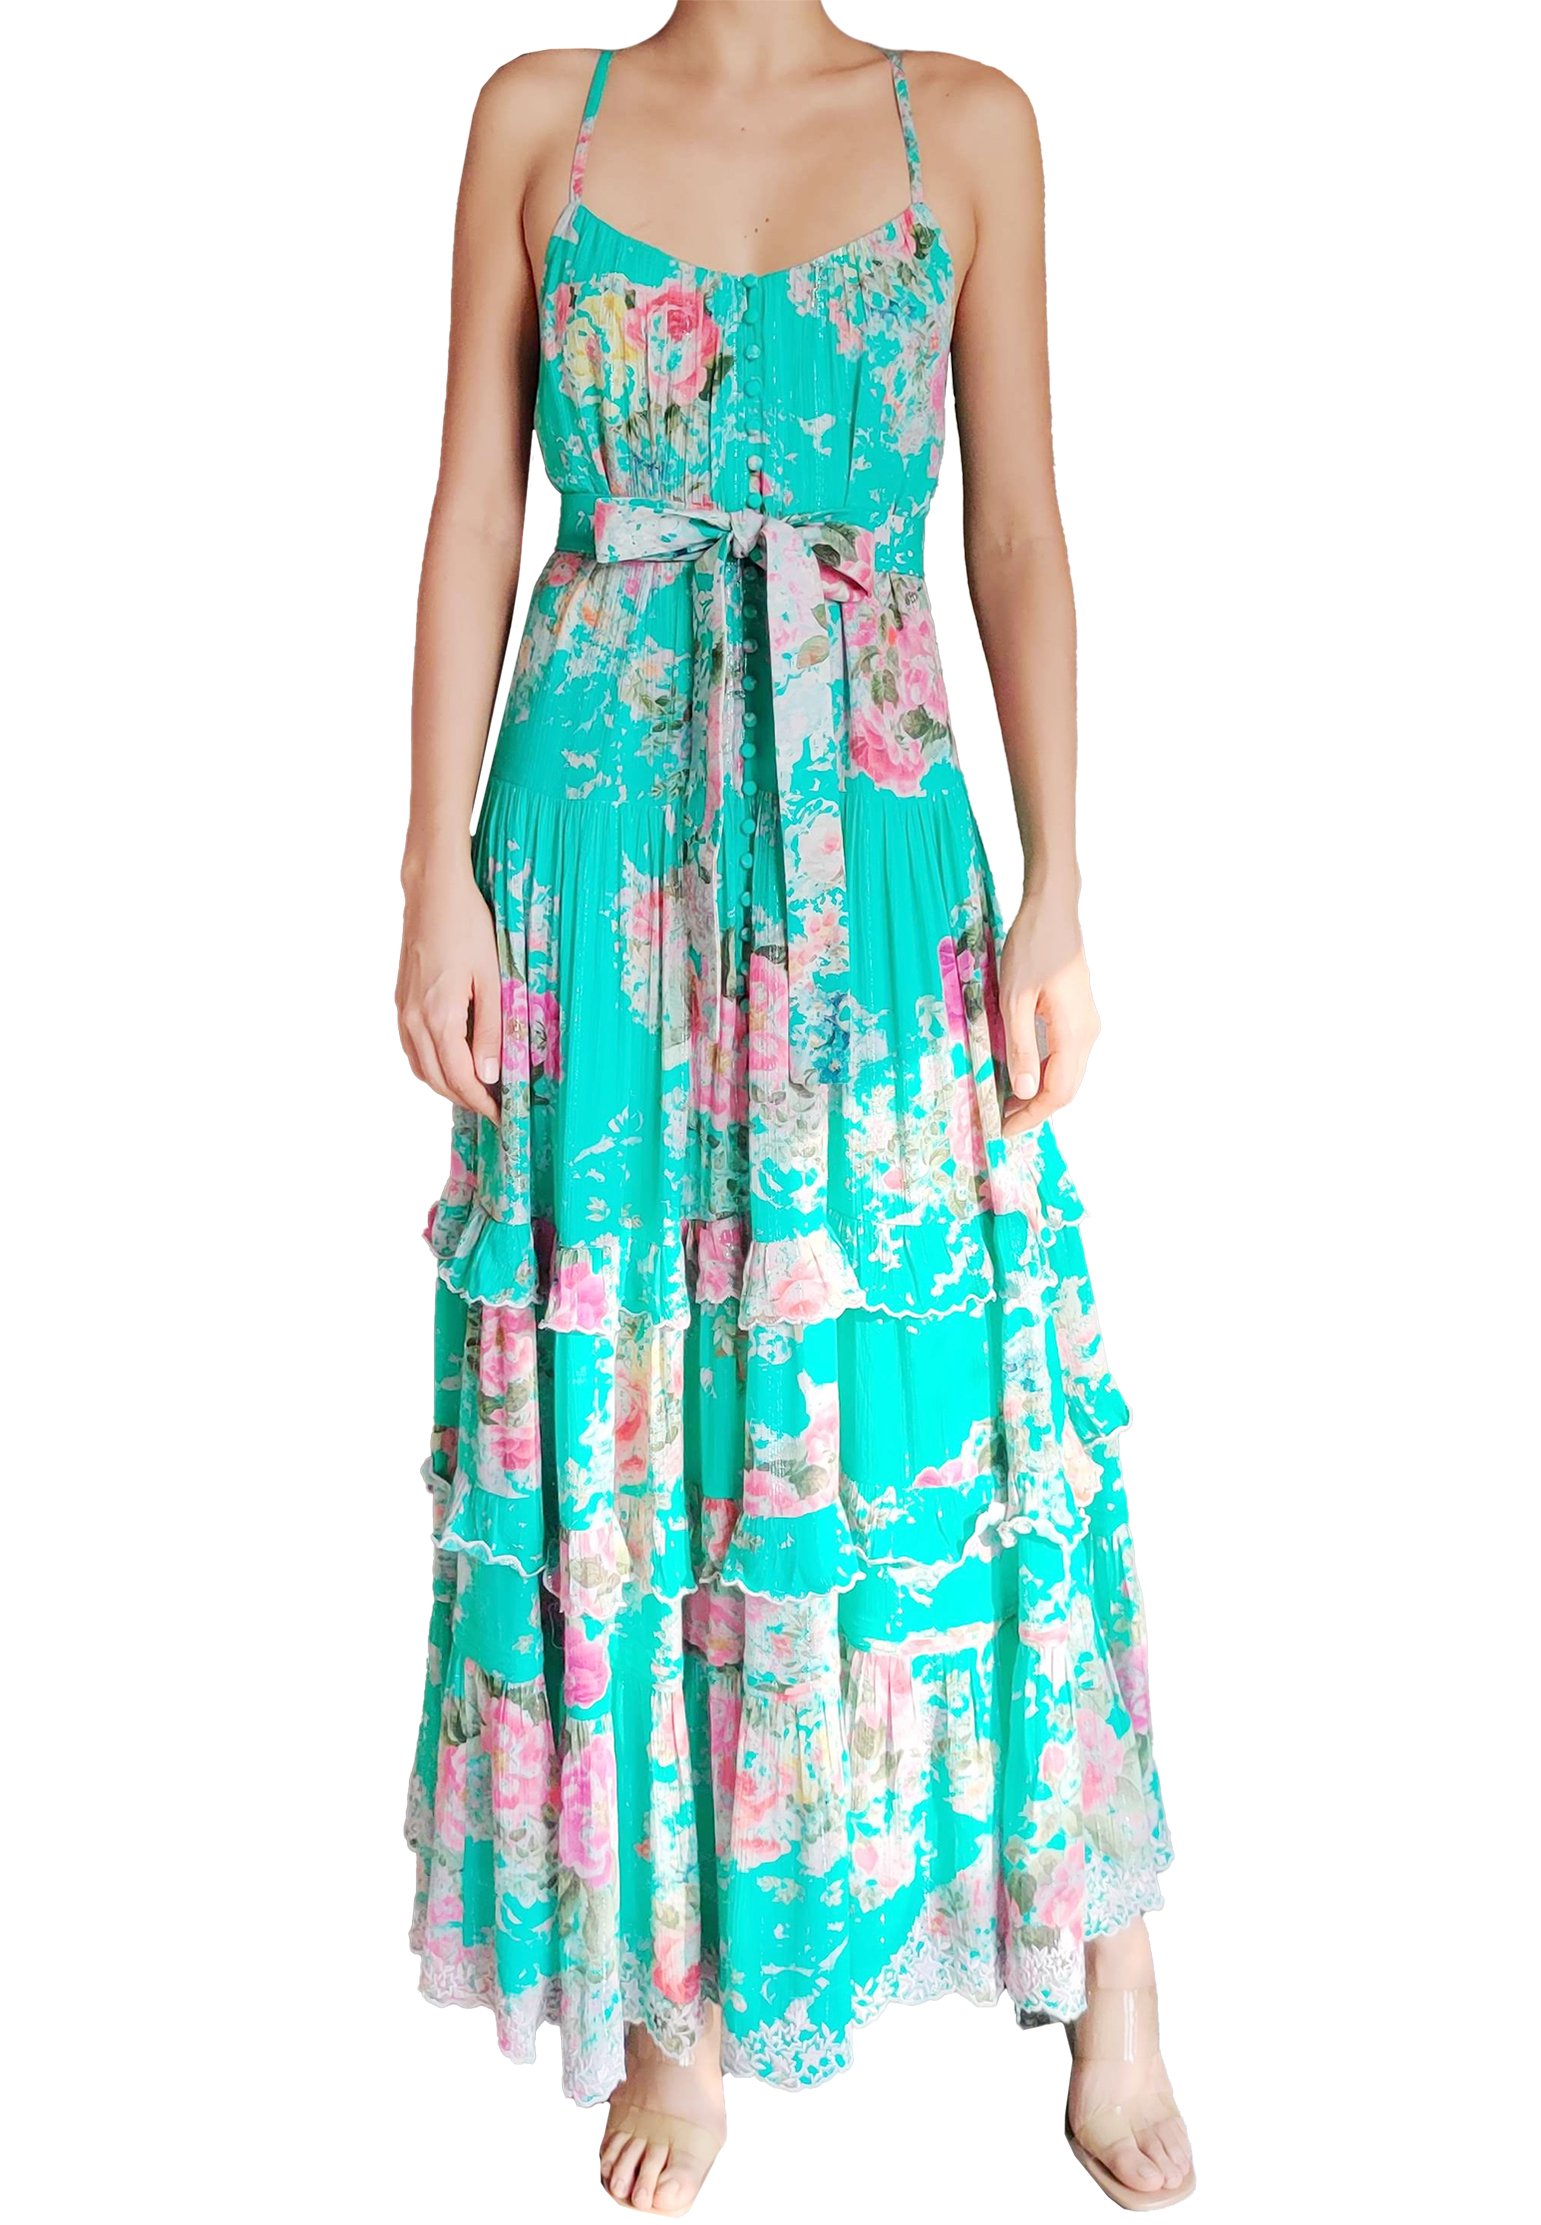 Dress HEMANT&NANDITA Color: green (Code: 756) in online store Allure